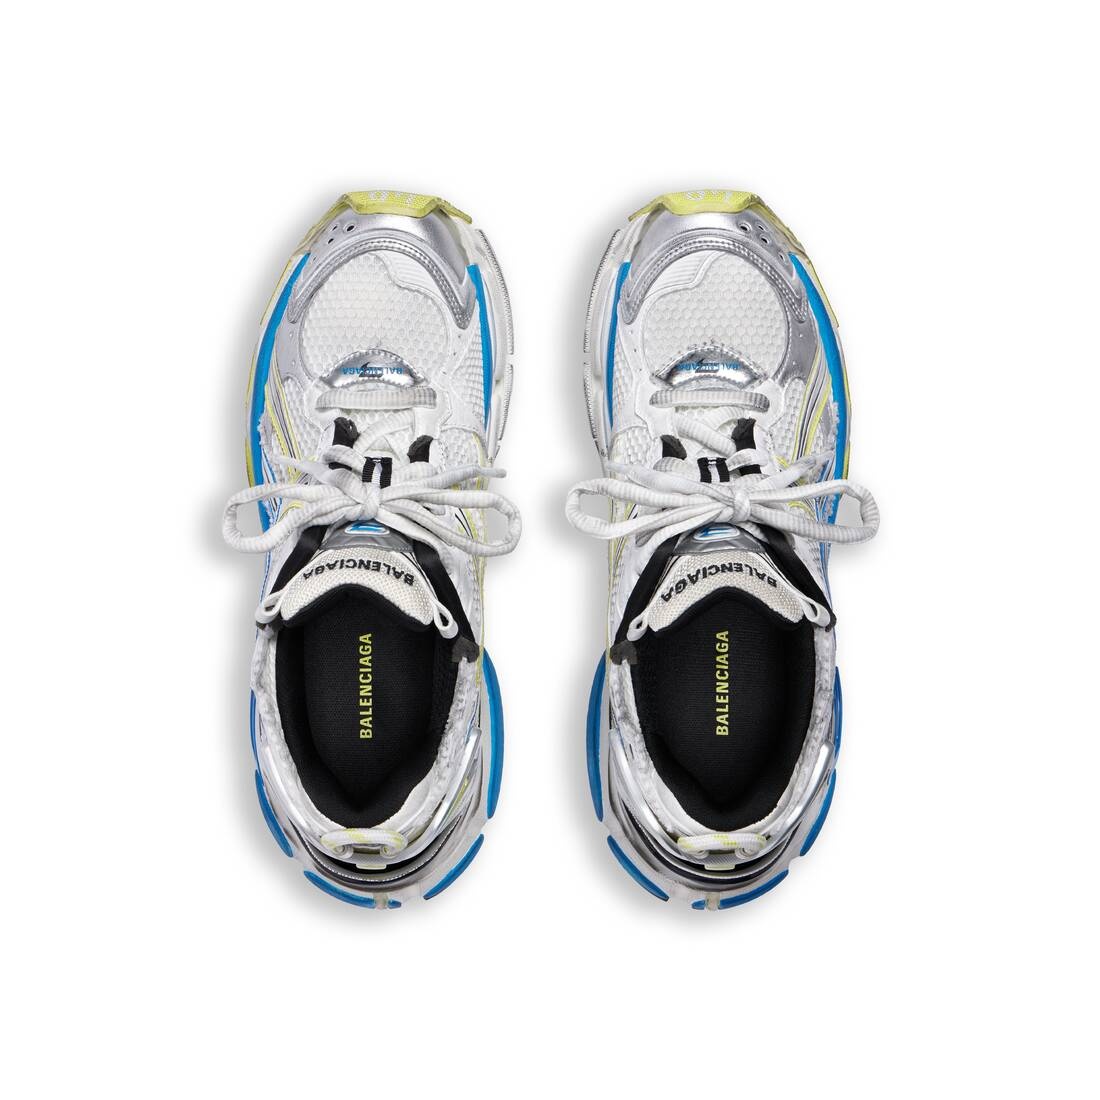 Men's Runner Sneaker  in White/yellow/blue - 6